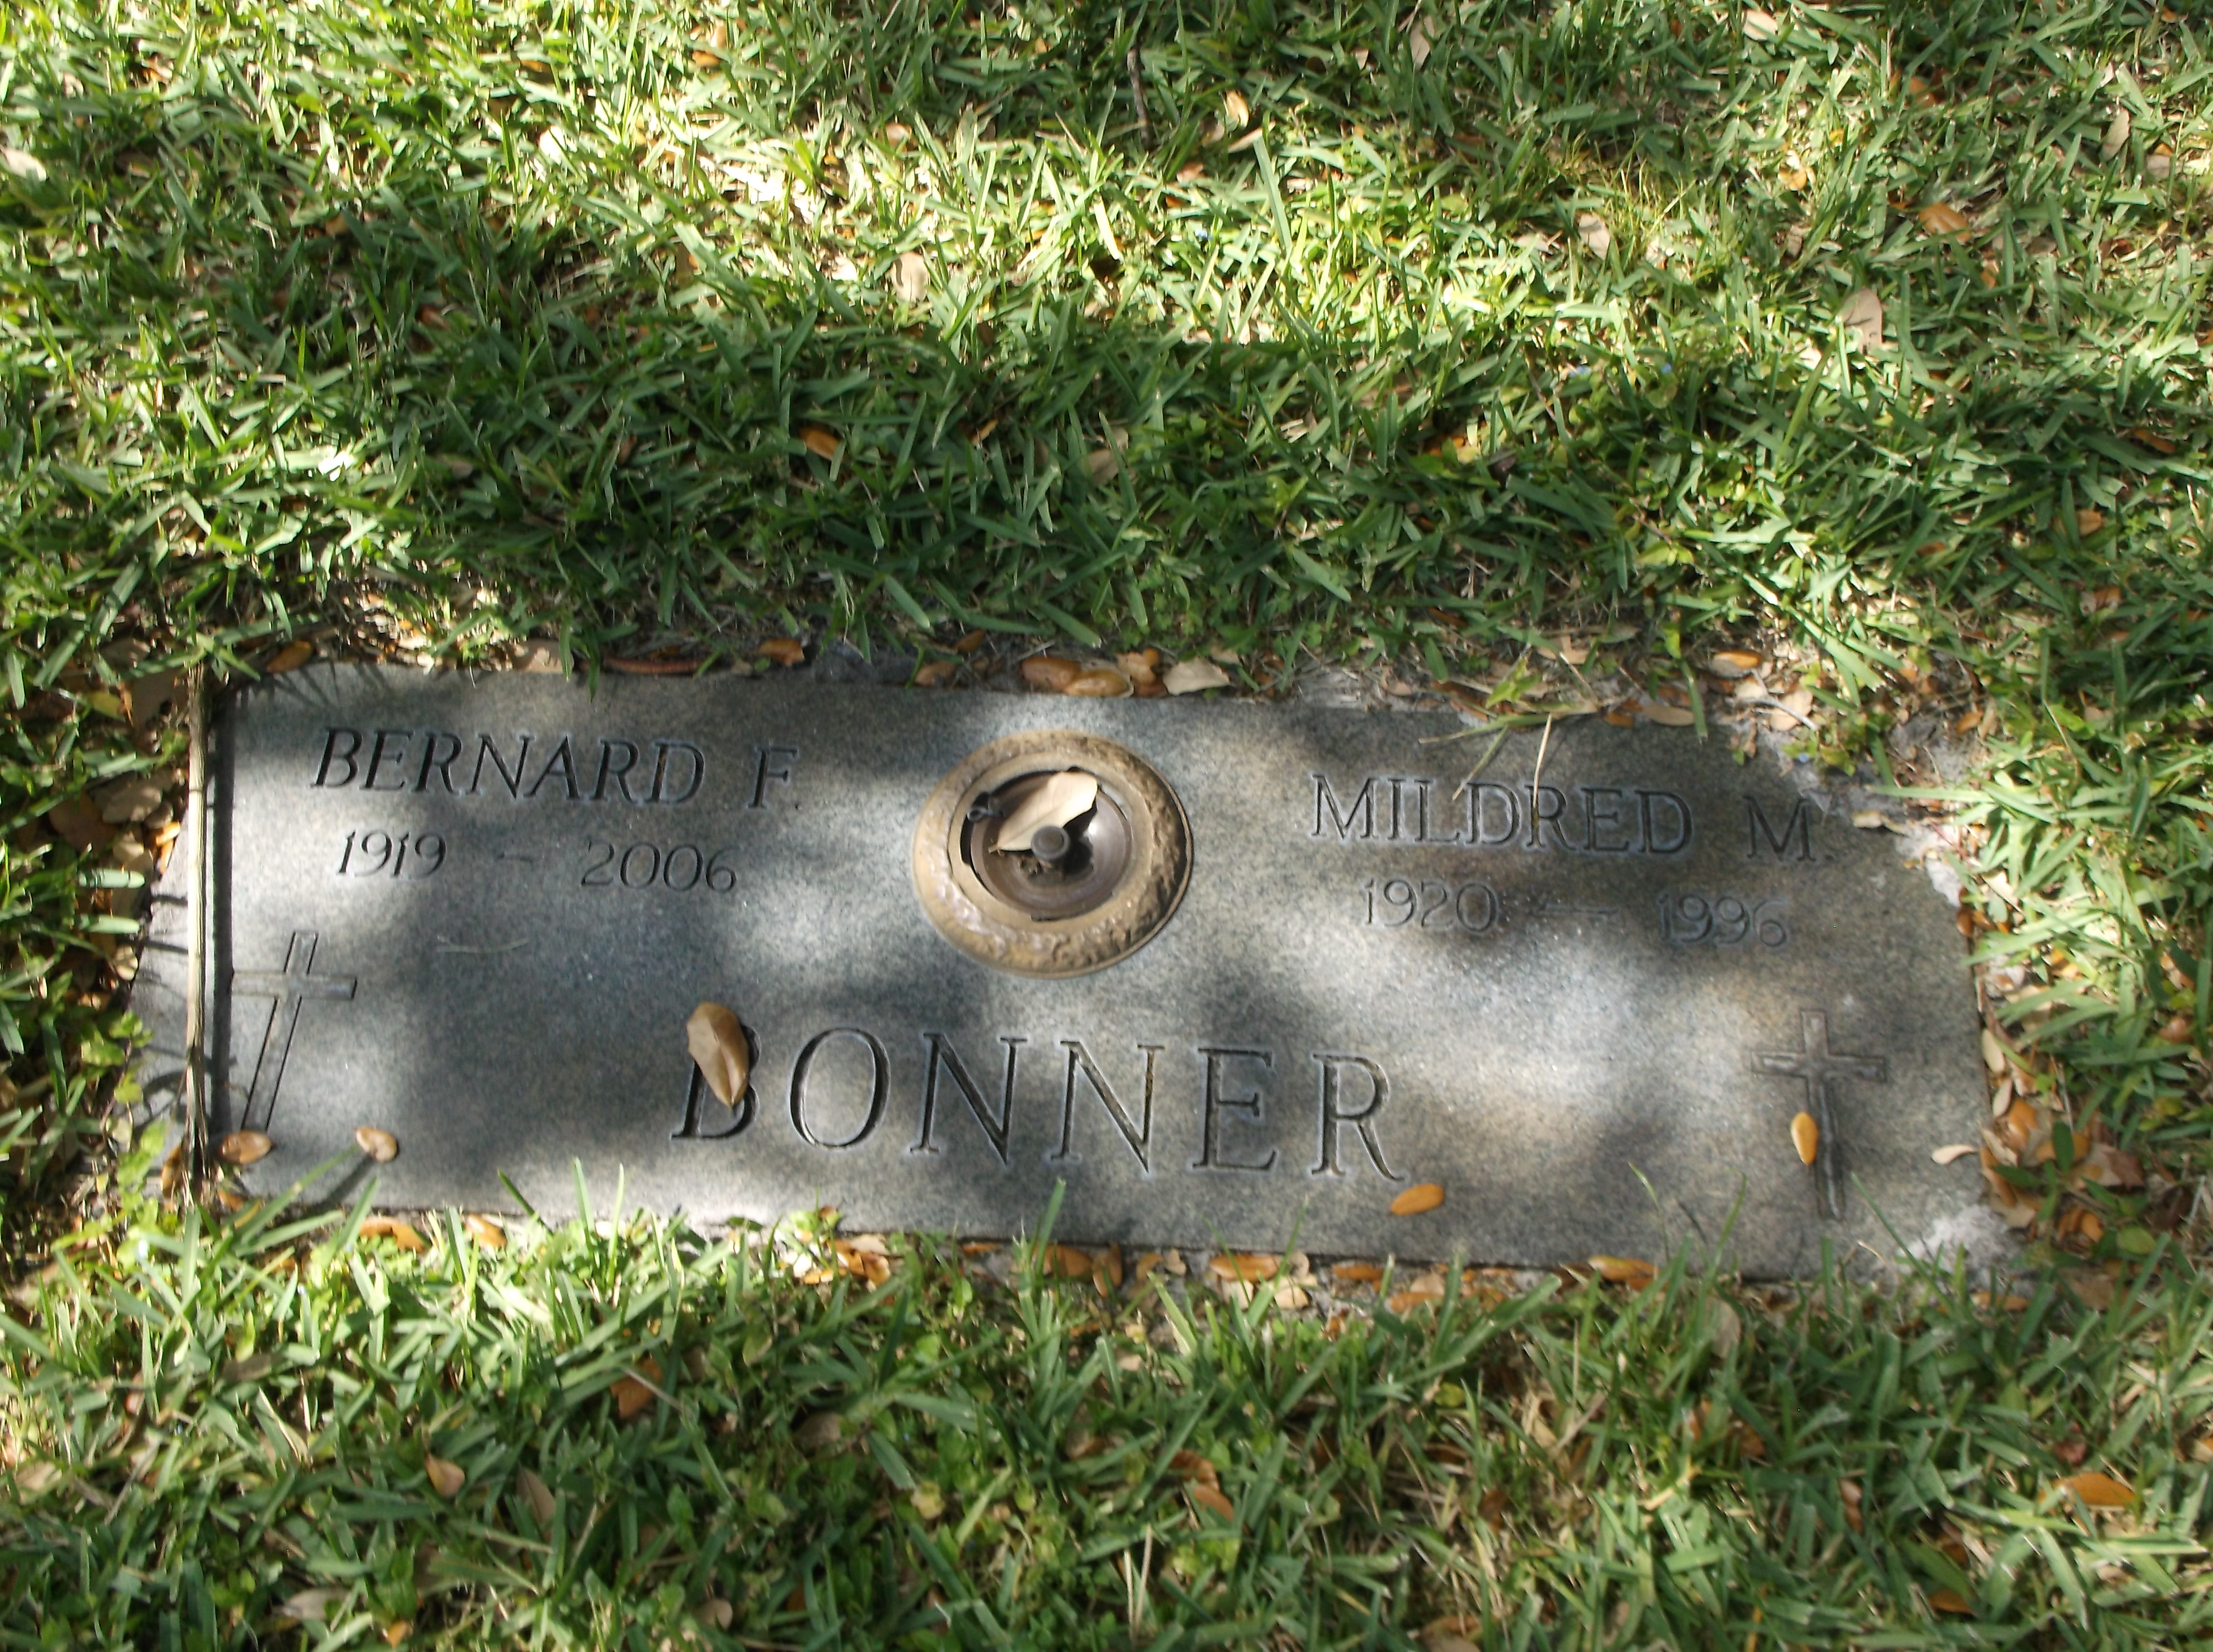 Mildred M Bonner